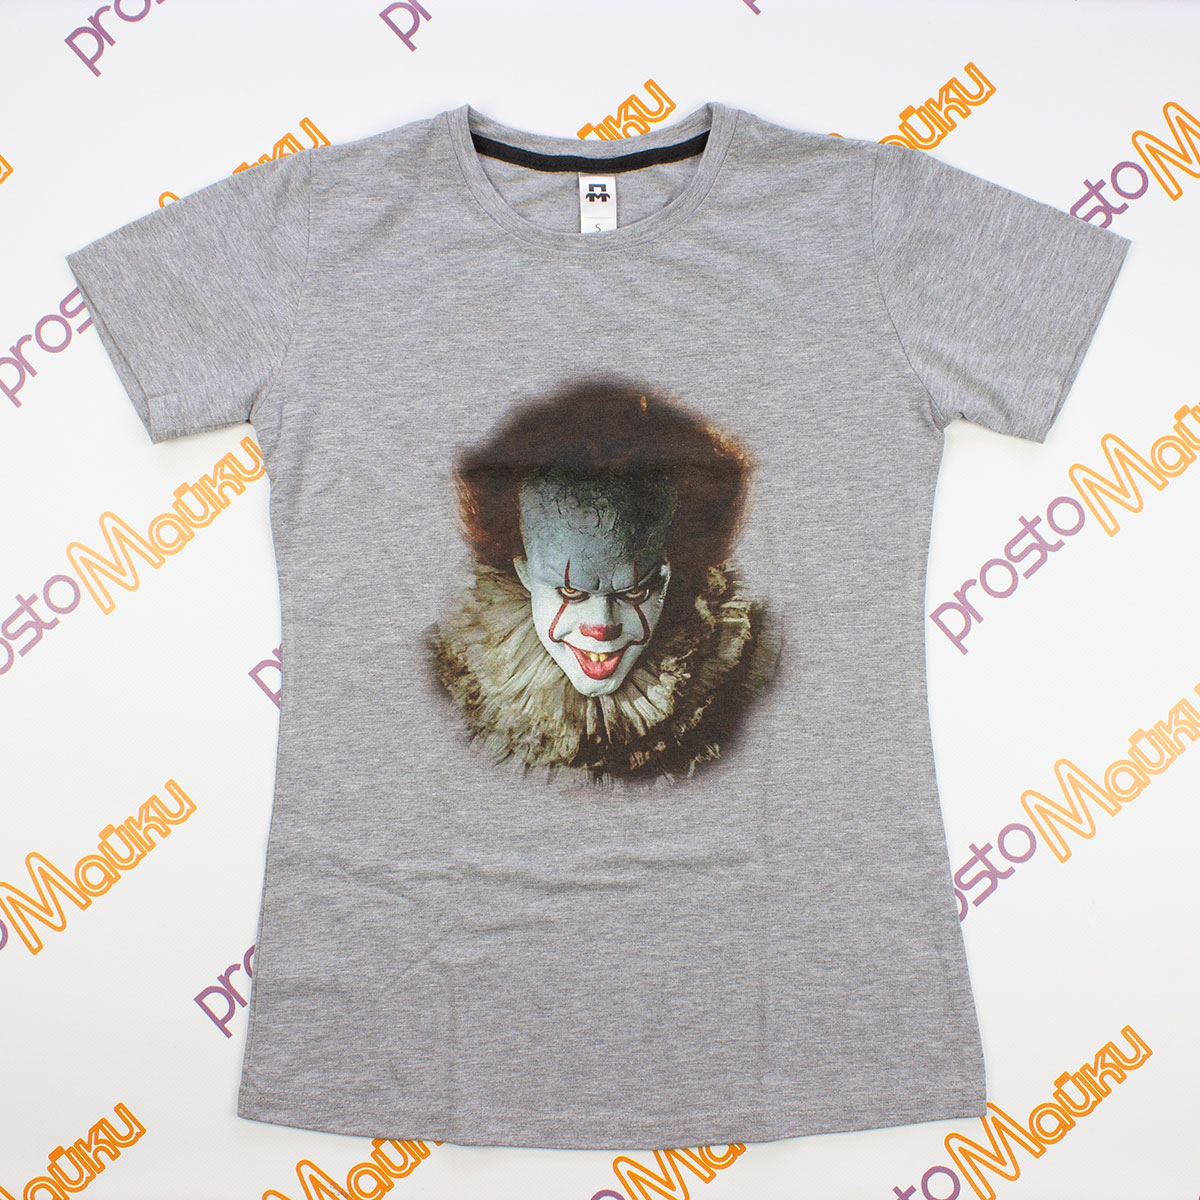 Удлиненная футболка с клоуном из фильма "Оно" (2)